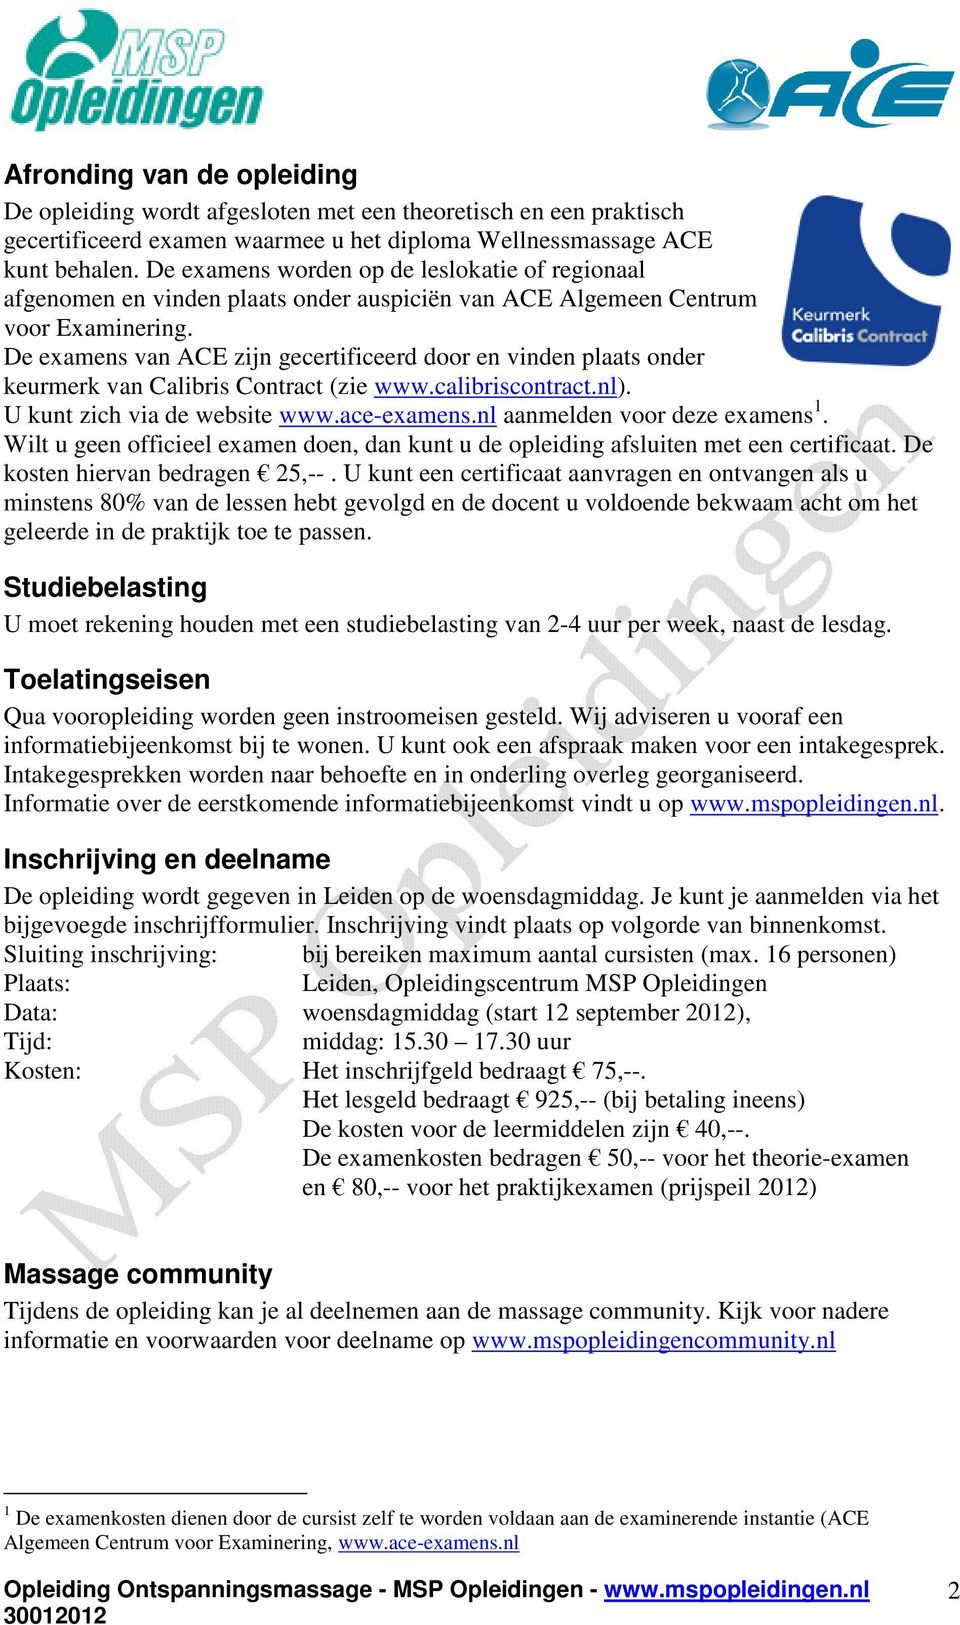 De examens van ACE zijn gecertificeerd door en vinden plaats onder keurmerk van Calibris Contract (zie www.calibriscontract.nl). U kunt zich via de website www.ace-examens.